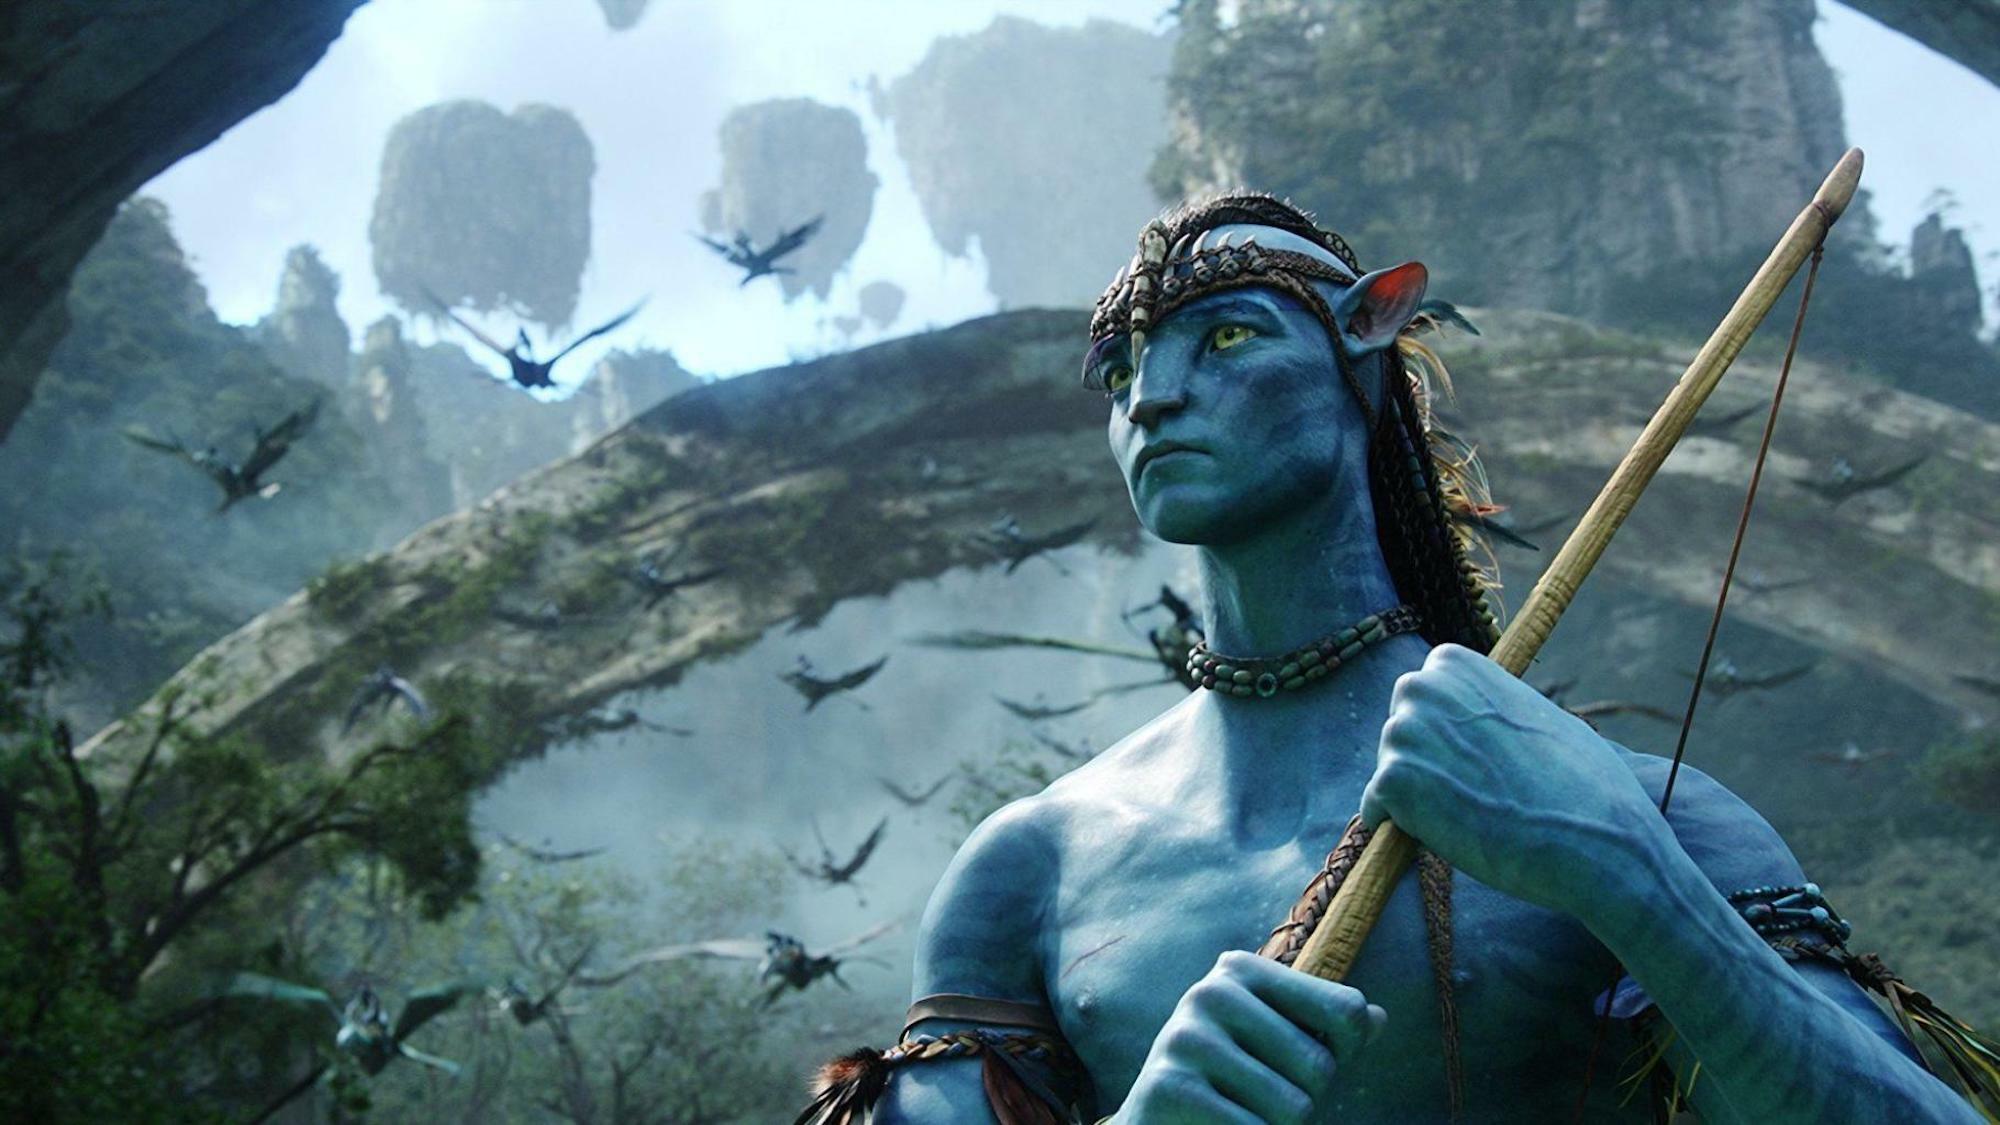 EXCLU : une scène clé du prochain film Avatar sera tournée à Lyon